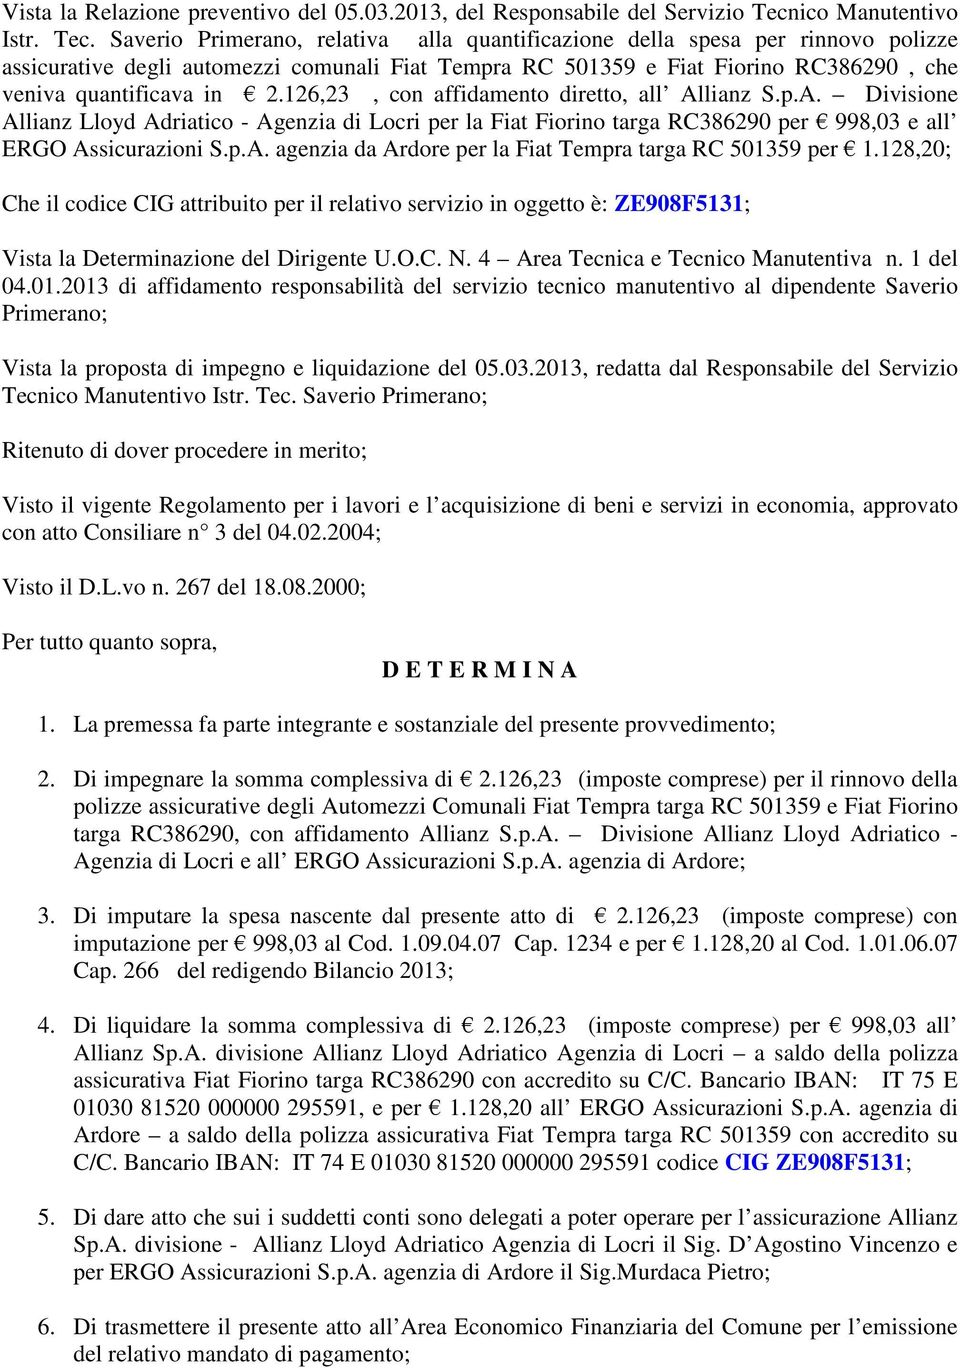 Saverio Primerano, relativa alla quantificazione della spesa per rinnovo polizze assicurative degli automezzi comunali Fiat Tempra RC 501359 e Fiat Fiorino RC386290, che veniva quantificava in 2.